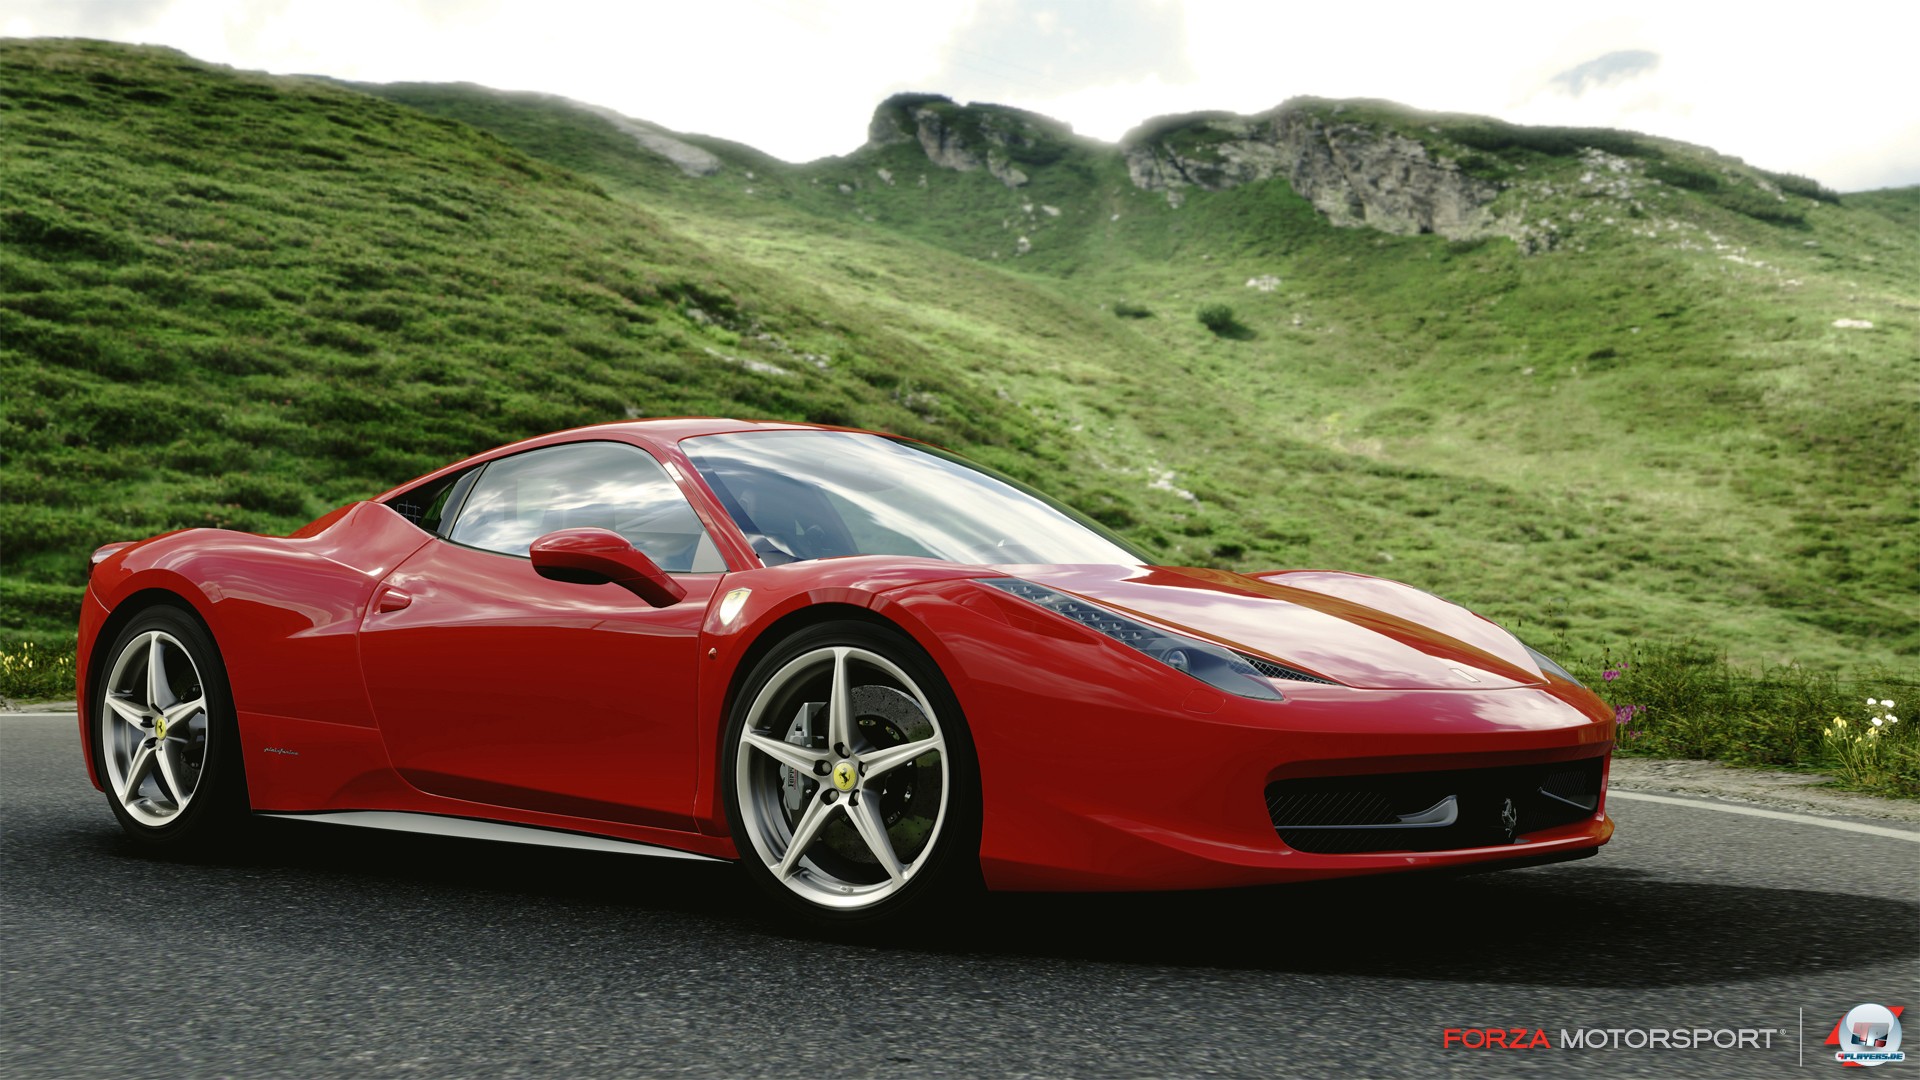 Detaillierte Fahrzeugmodelle und ansehnliche Kulissen: Forza 4 ist bestens gerüstet.